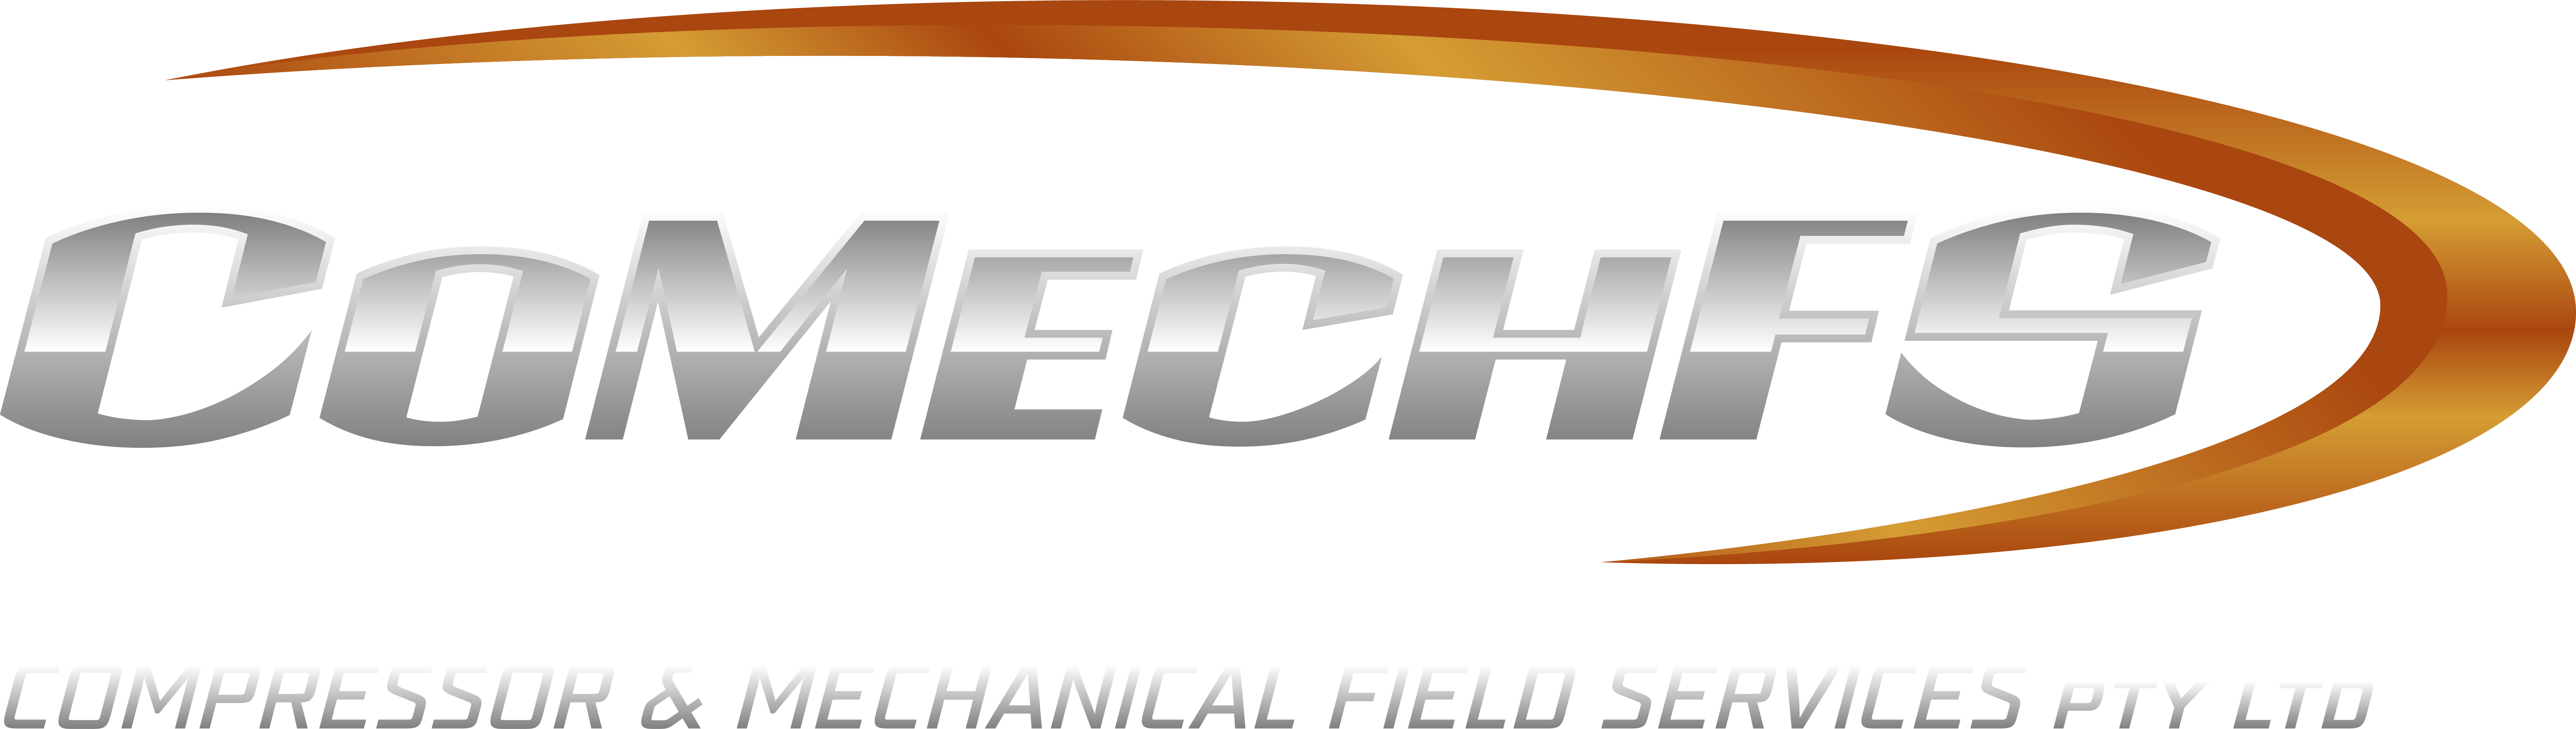 CoMechFS - Logo (transparent BG)